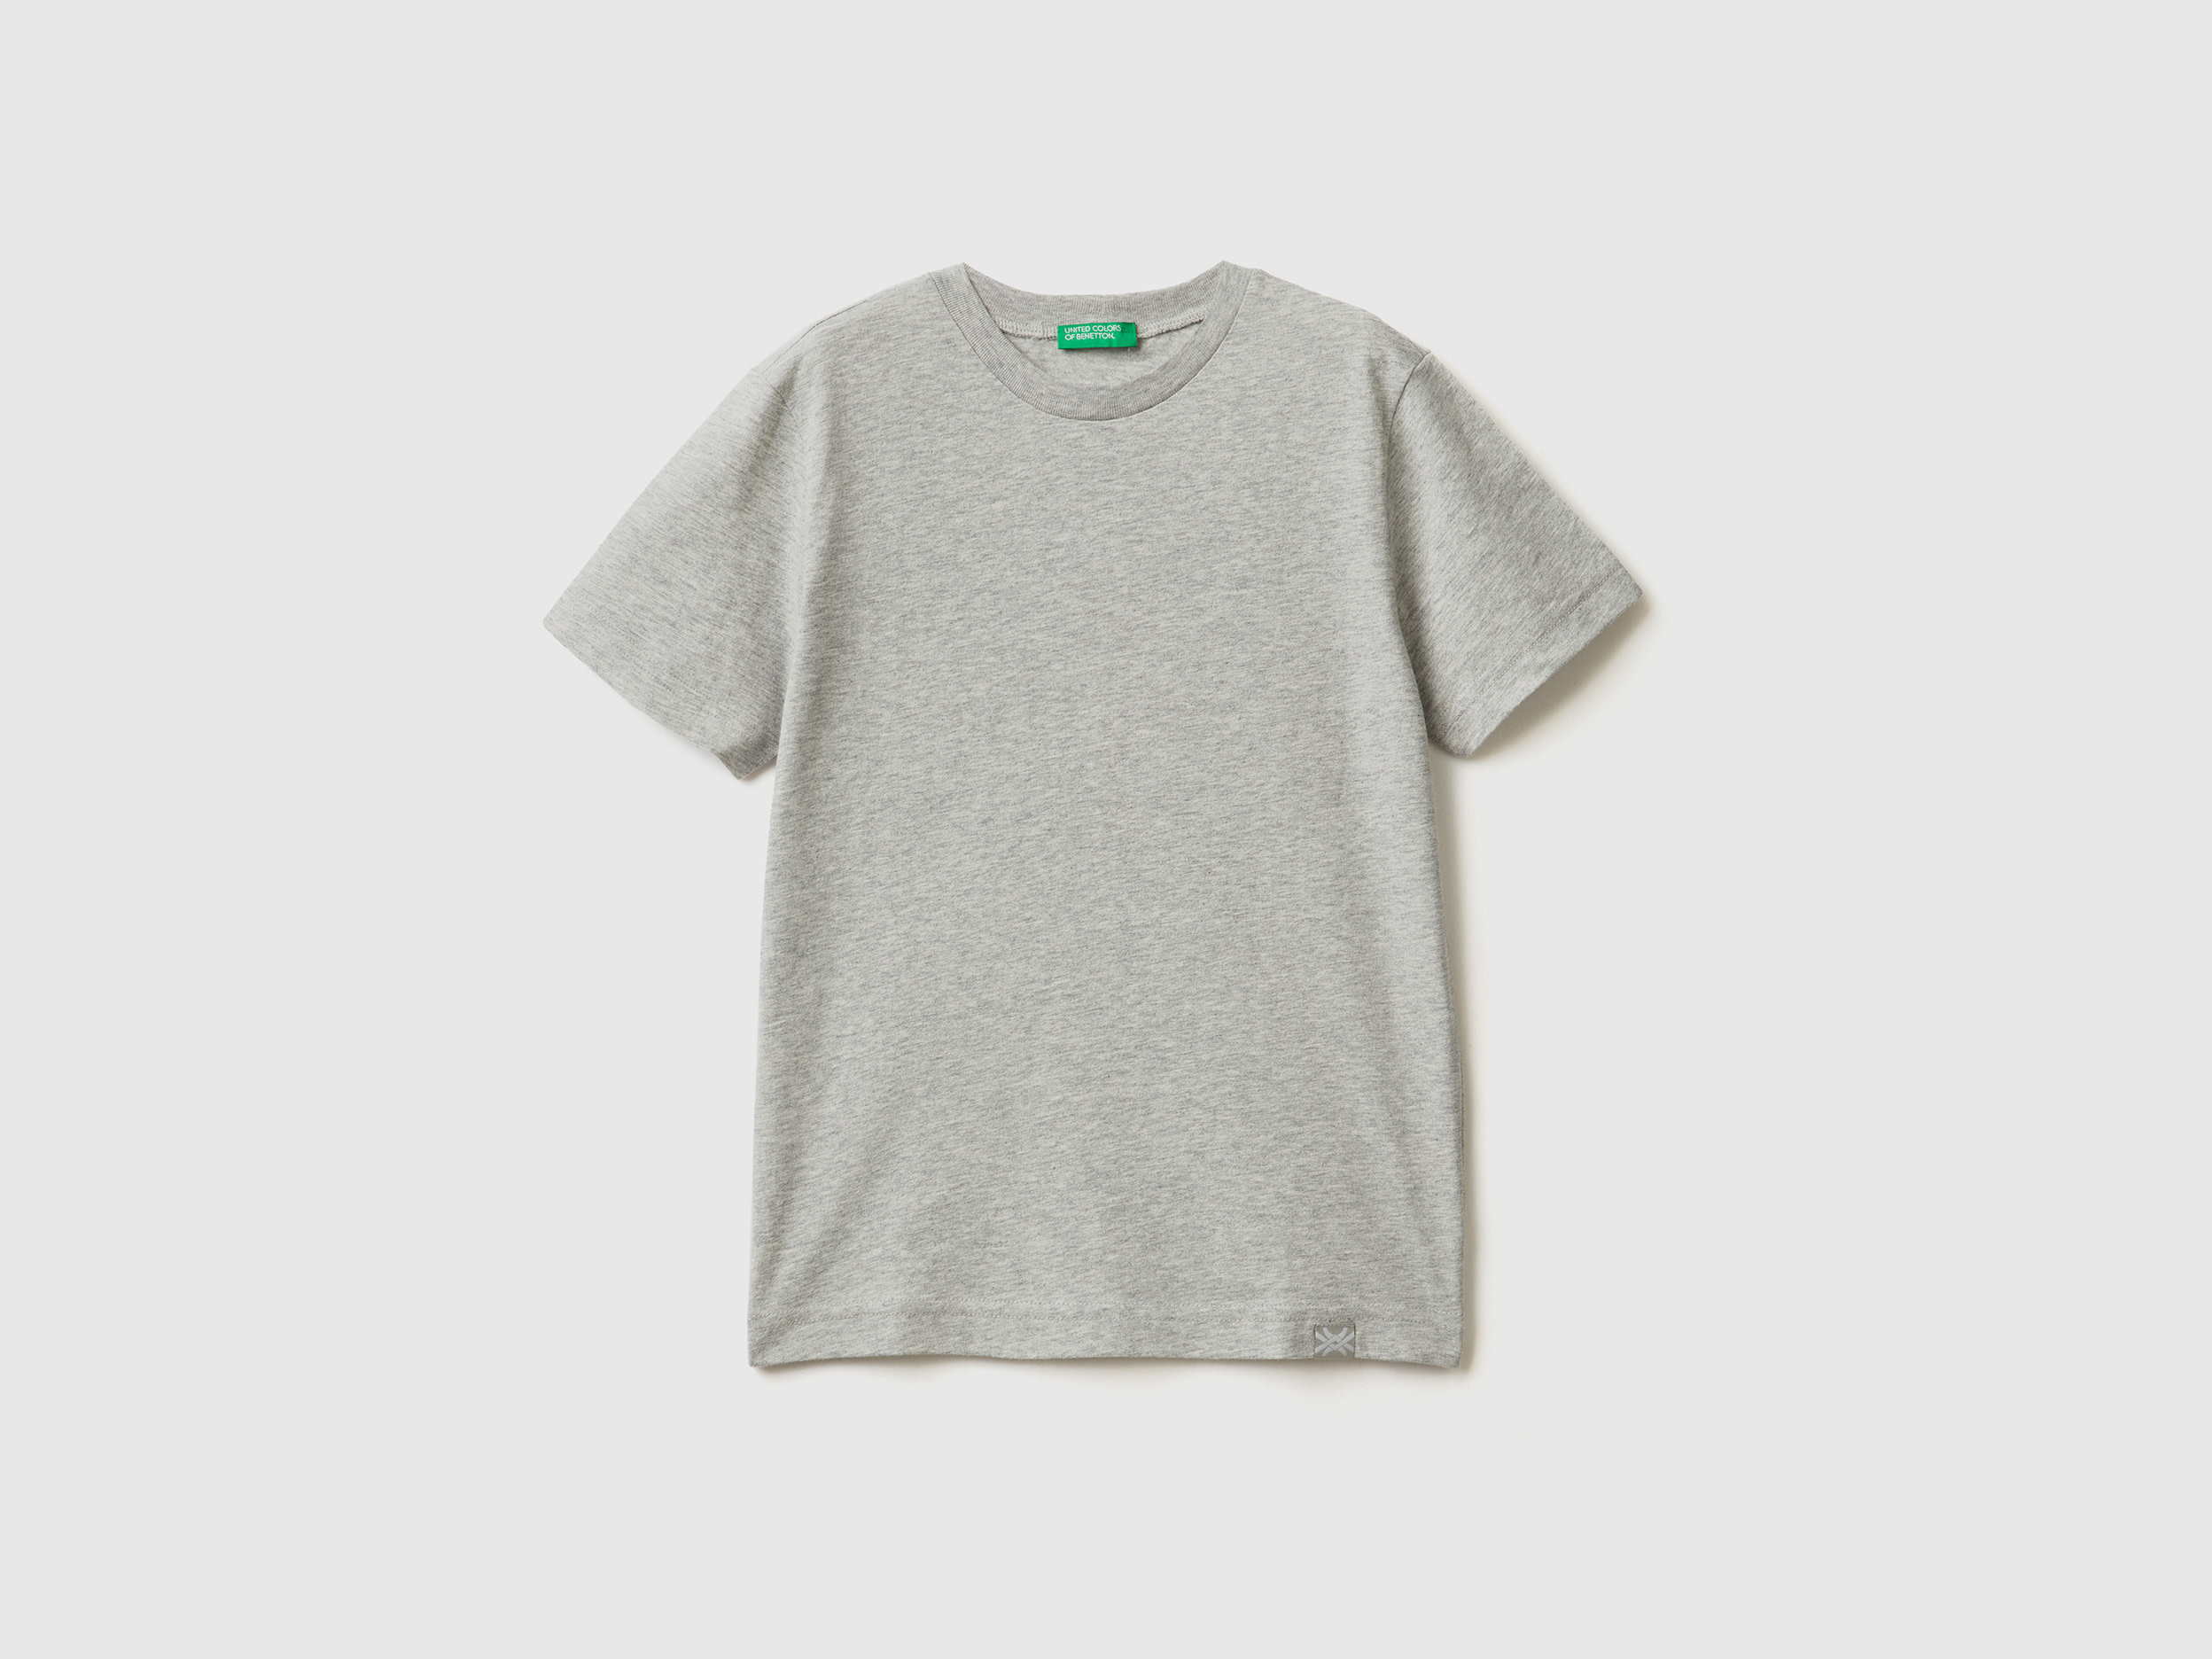 Benetton, Organic Cotton T-shirt, size 2XL, Light Gray, Kids